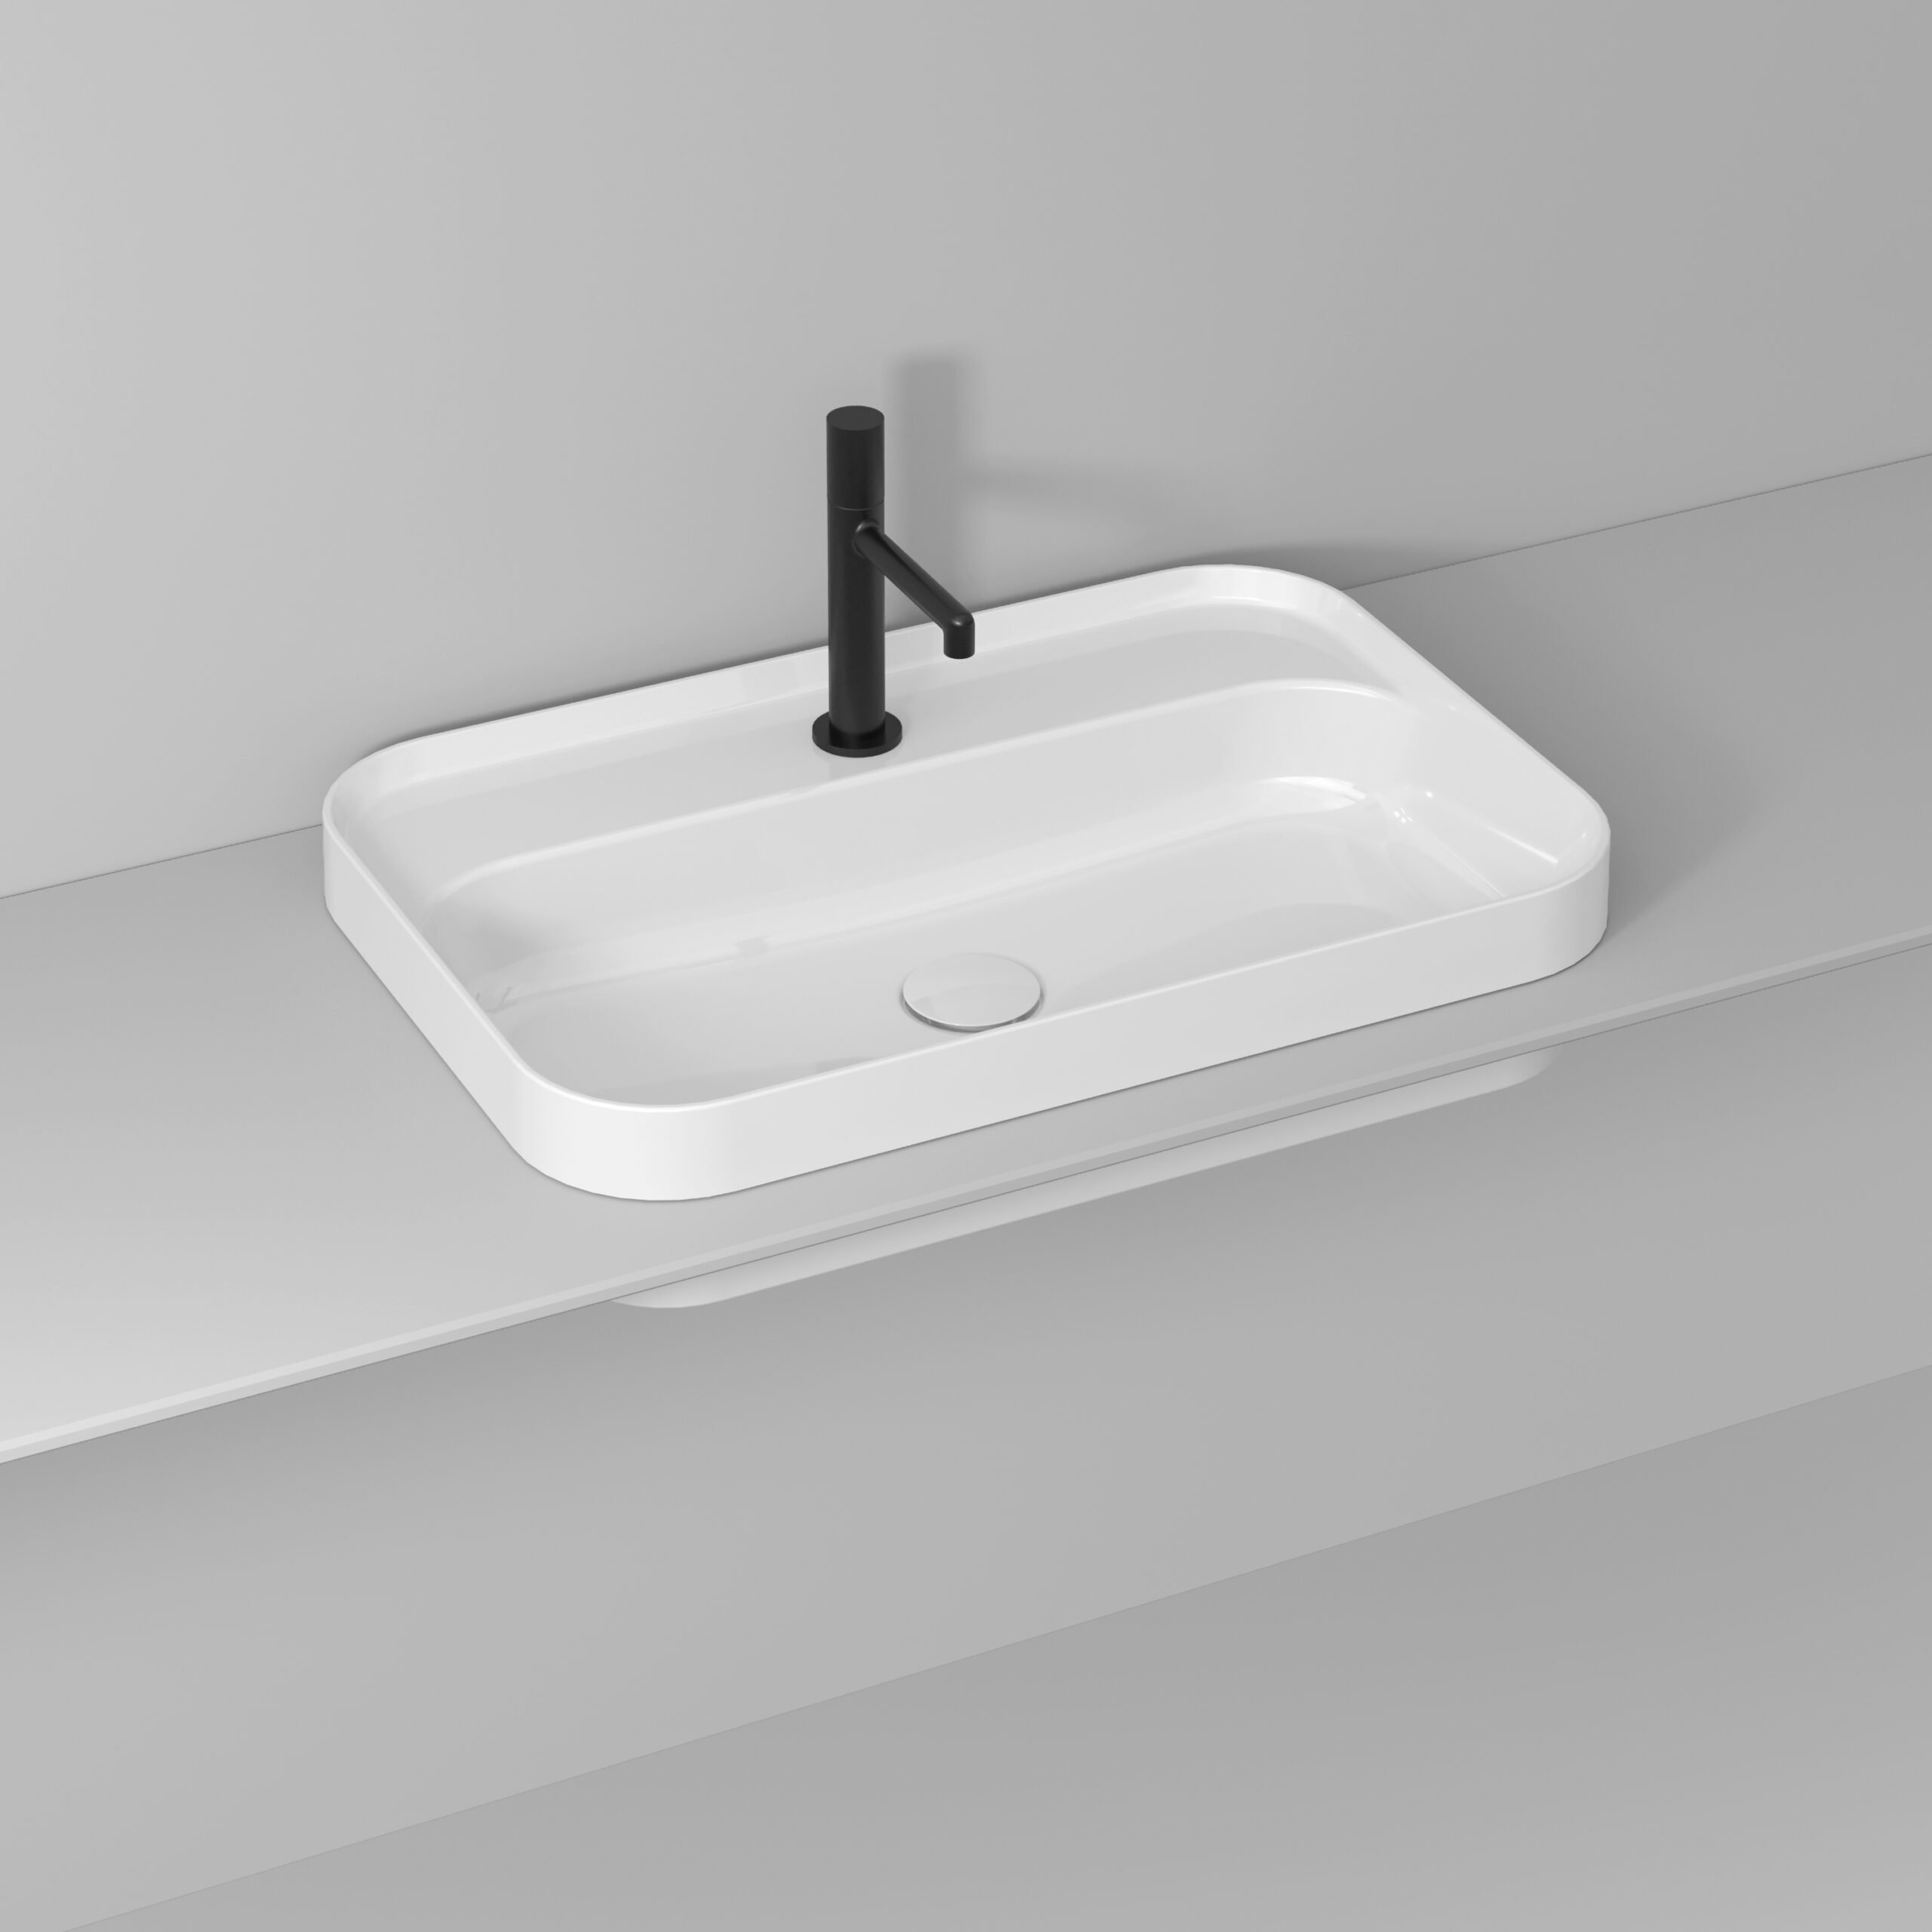 Slim built-in washbasin